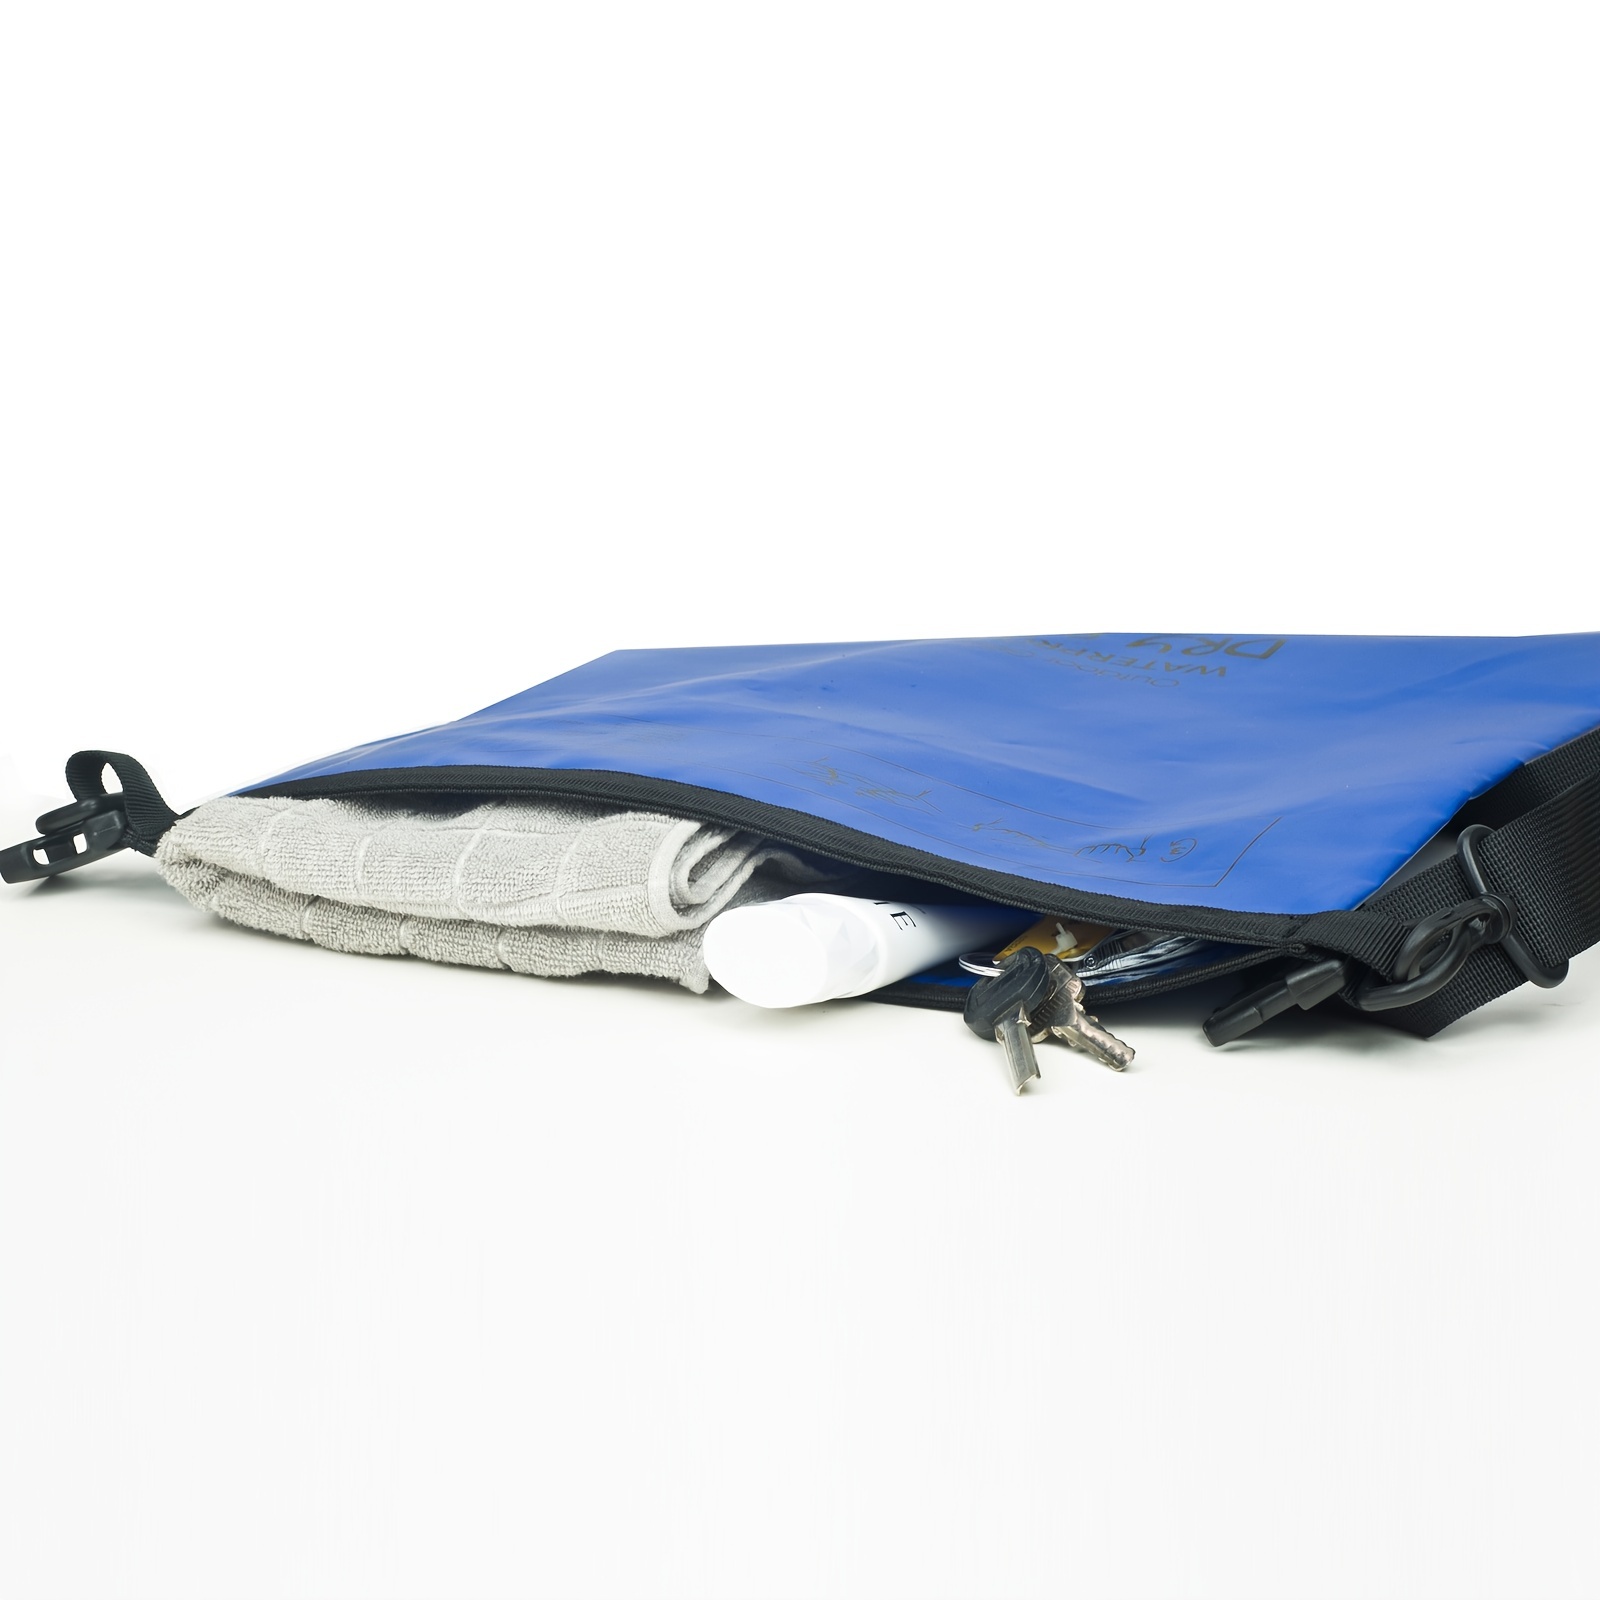 Malo'o Bolsa seca impermeable de 40L/60L/100L, lona enrollable mantiene el  equipo seco para kayak, rafting, canotaje, natación, camping, senderismo